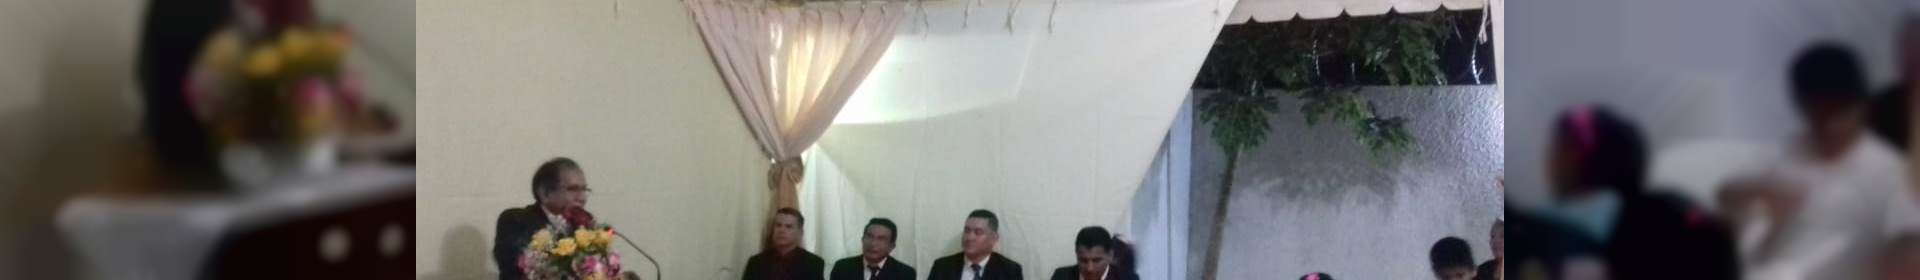 Igreja Cristã Maranta na Bolívia completa 10 anos